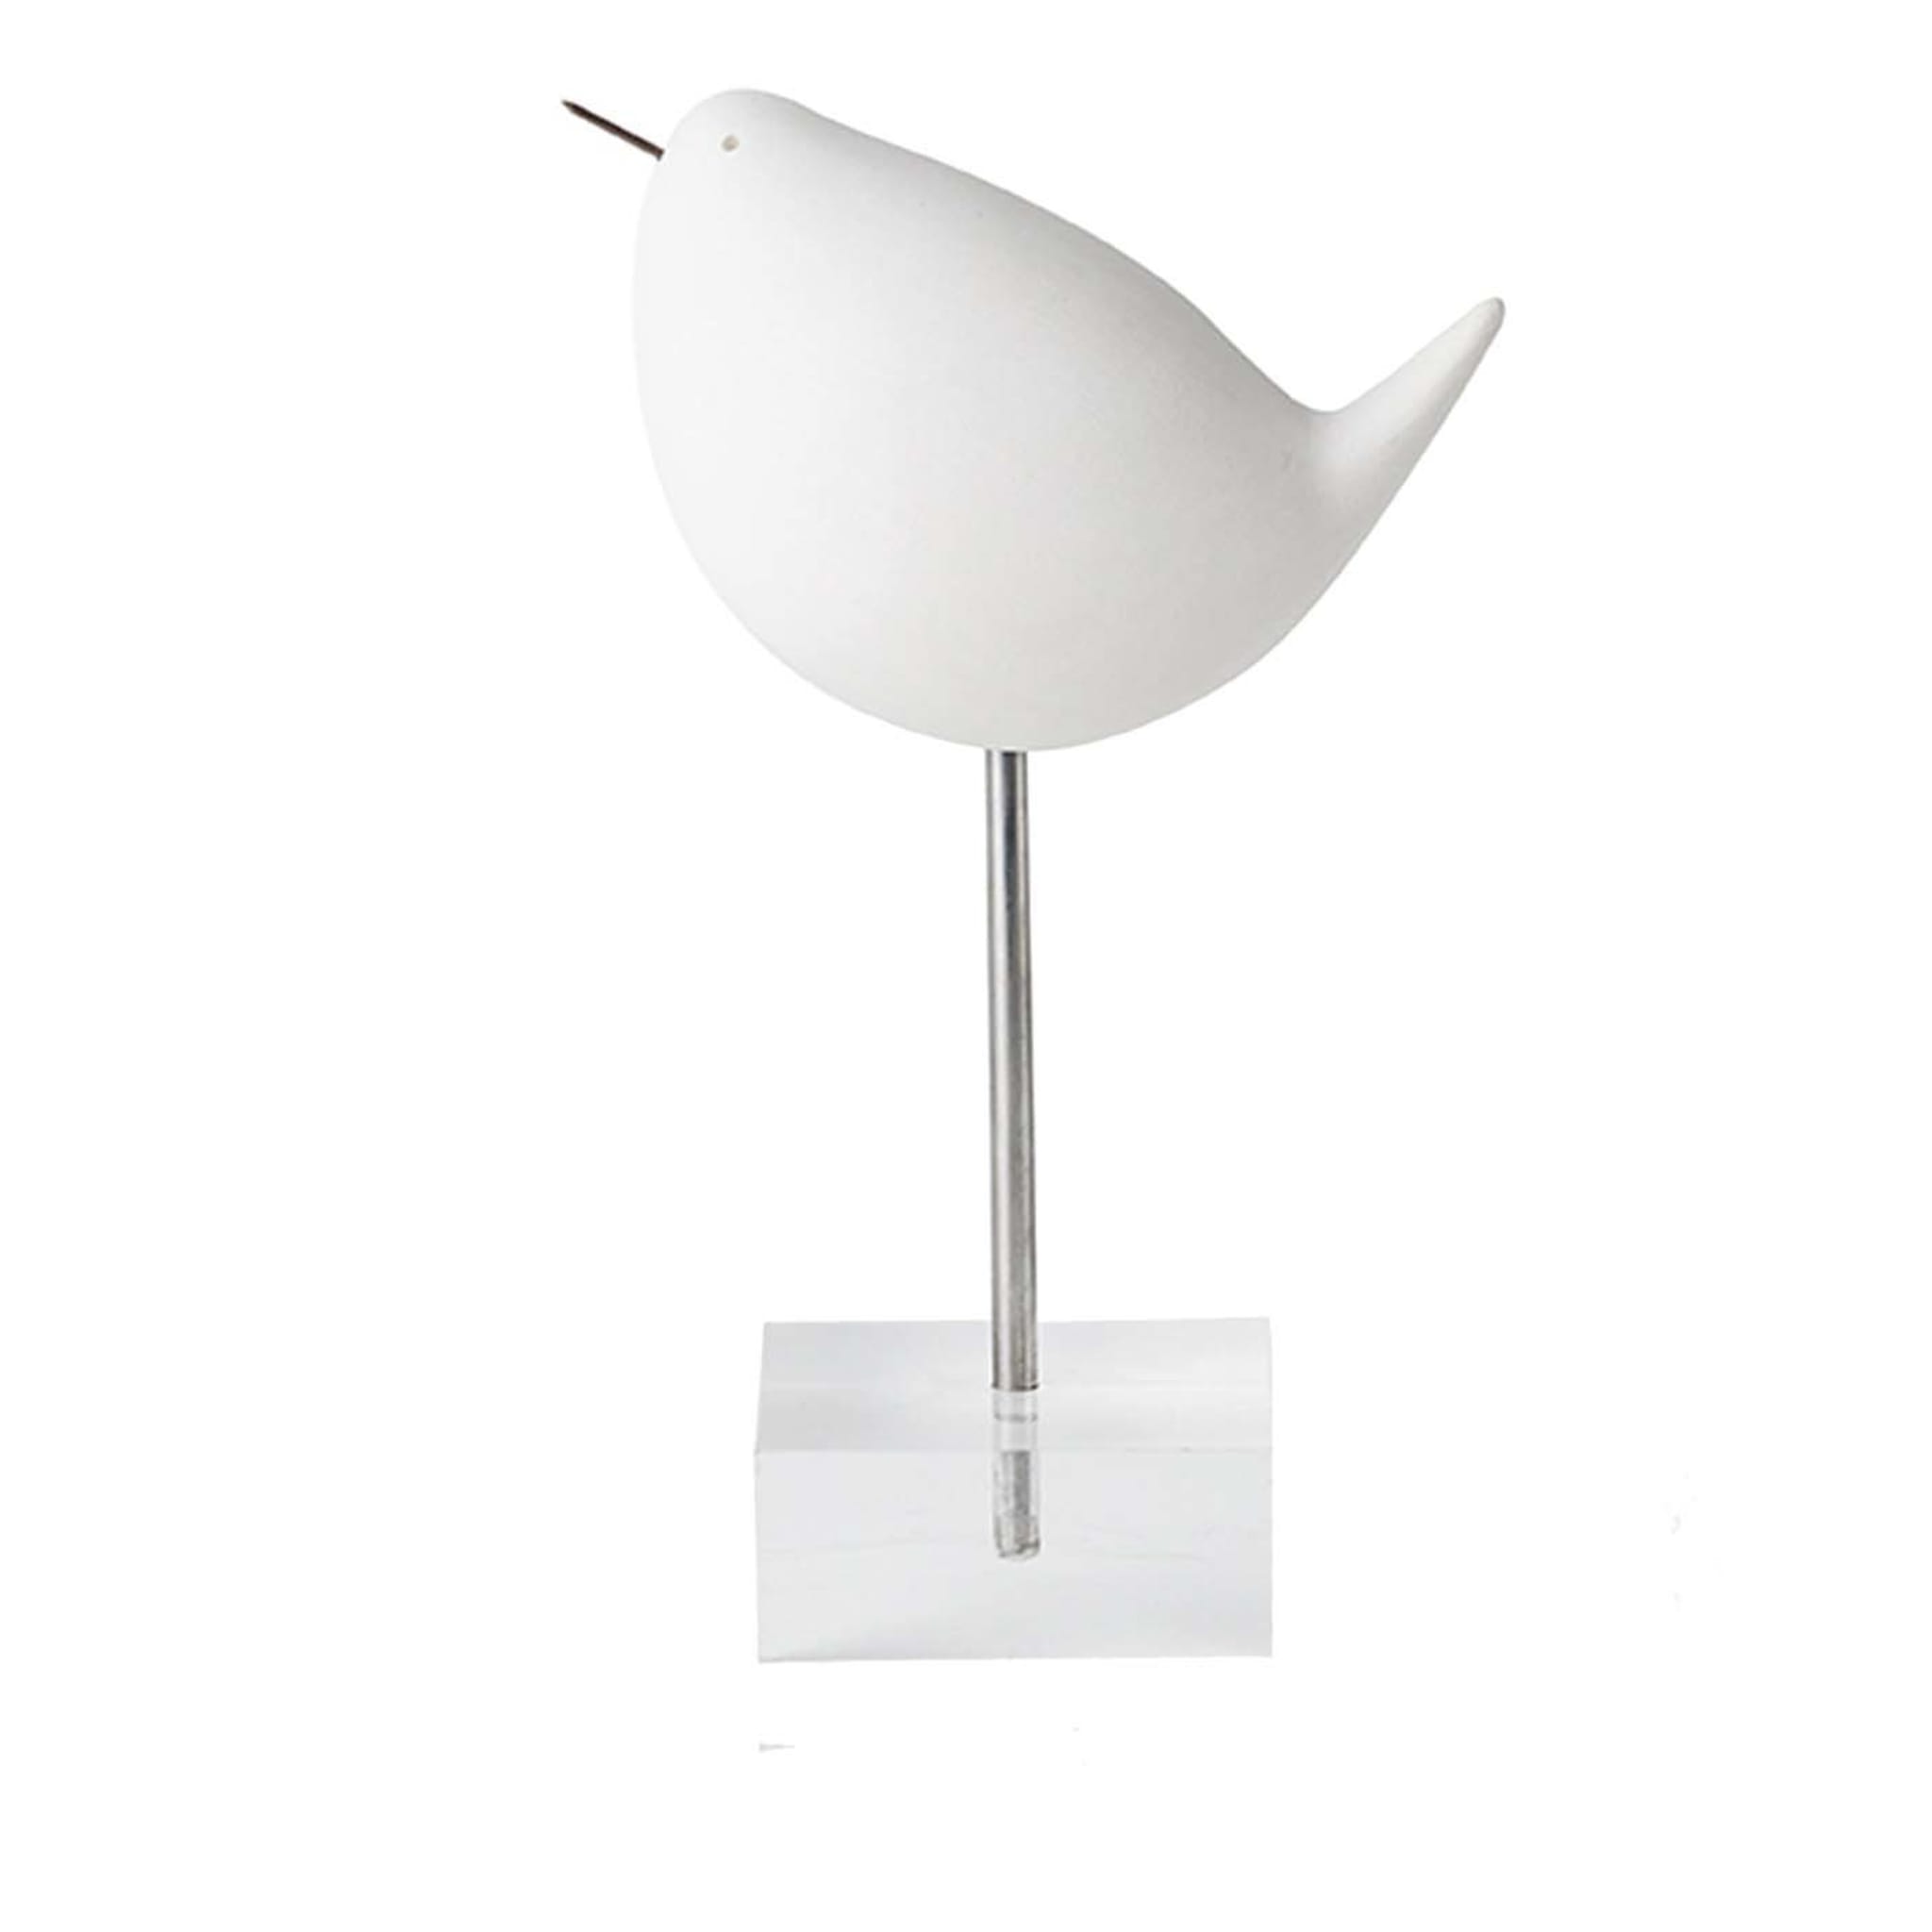 White Bird on a Stand di Aldo Londi #2 - Vista principale